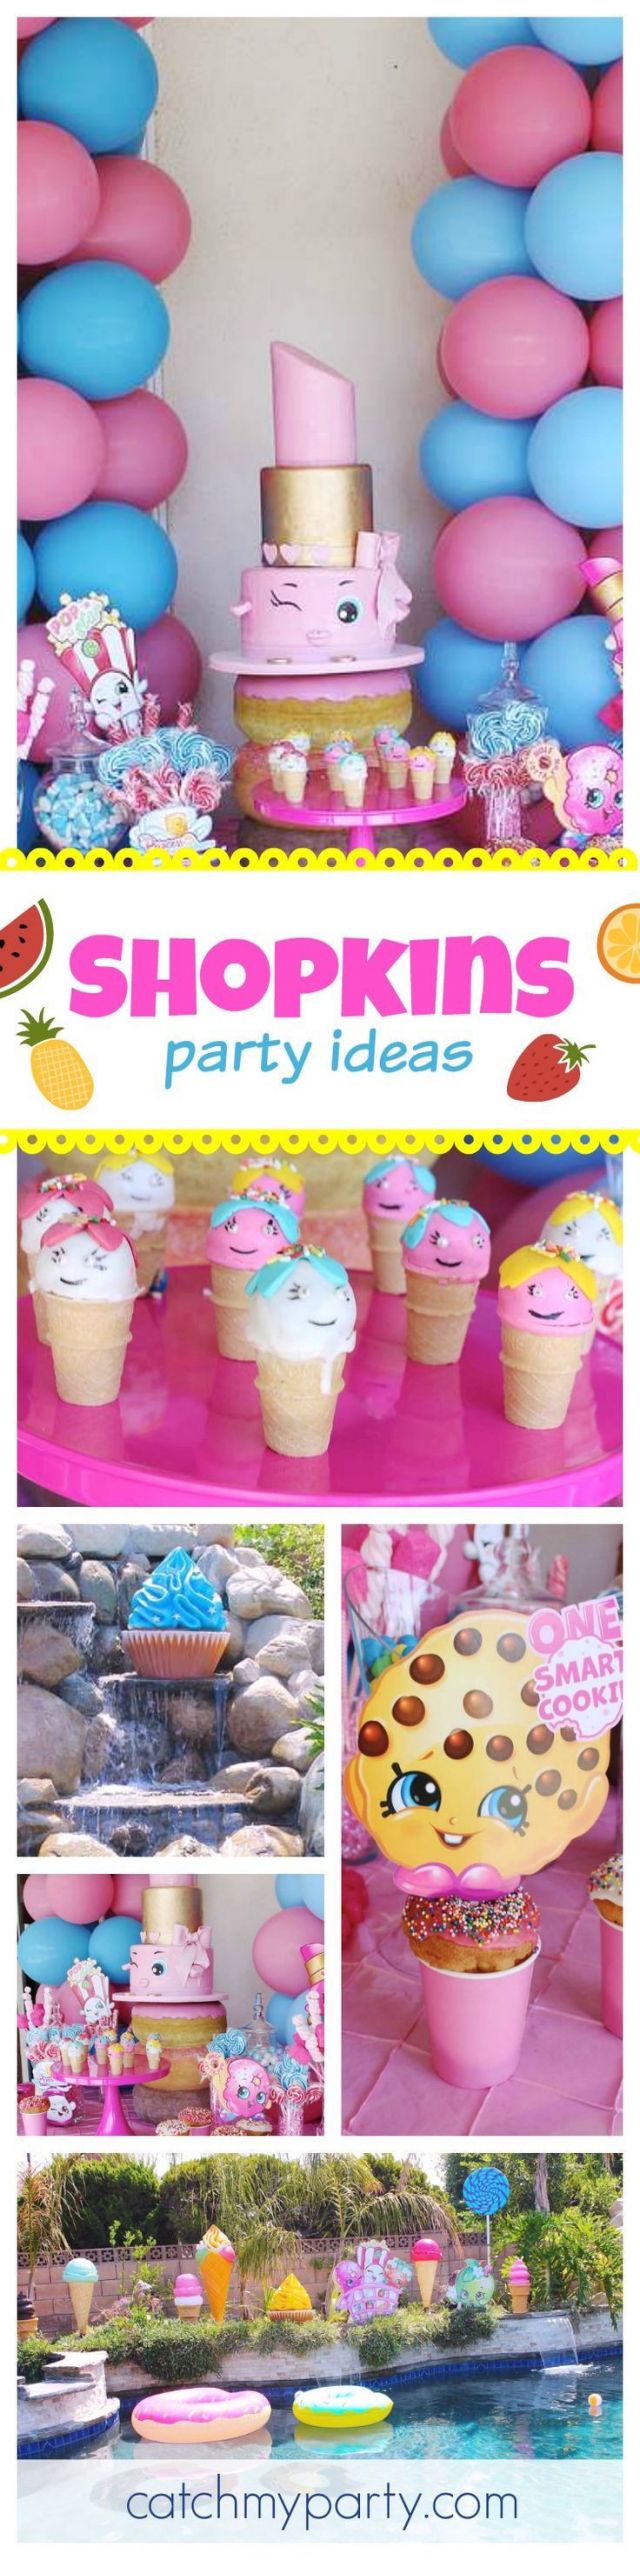 Shopkins Pool Party Ideas
 Shopkins Birthday "Shopkins"